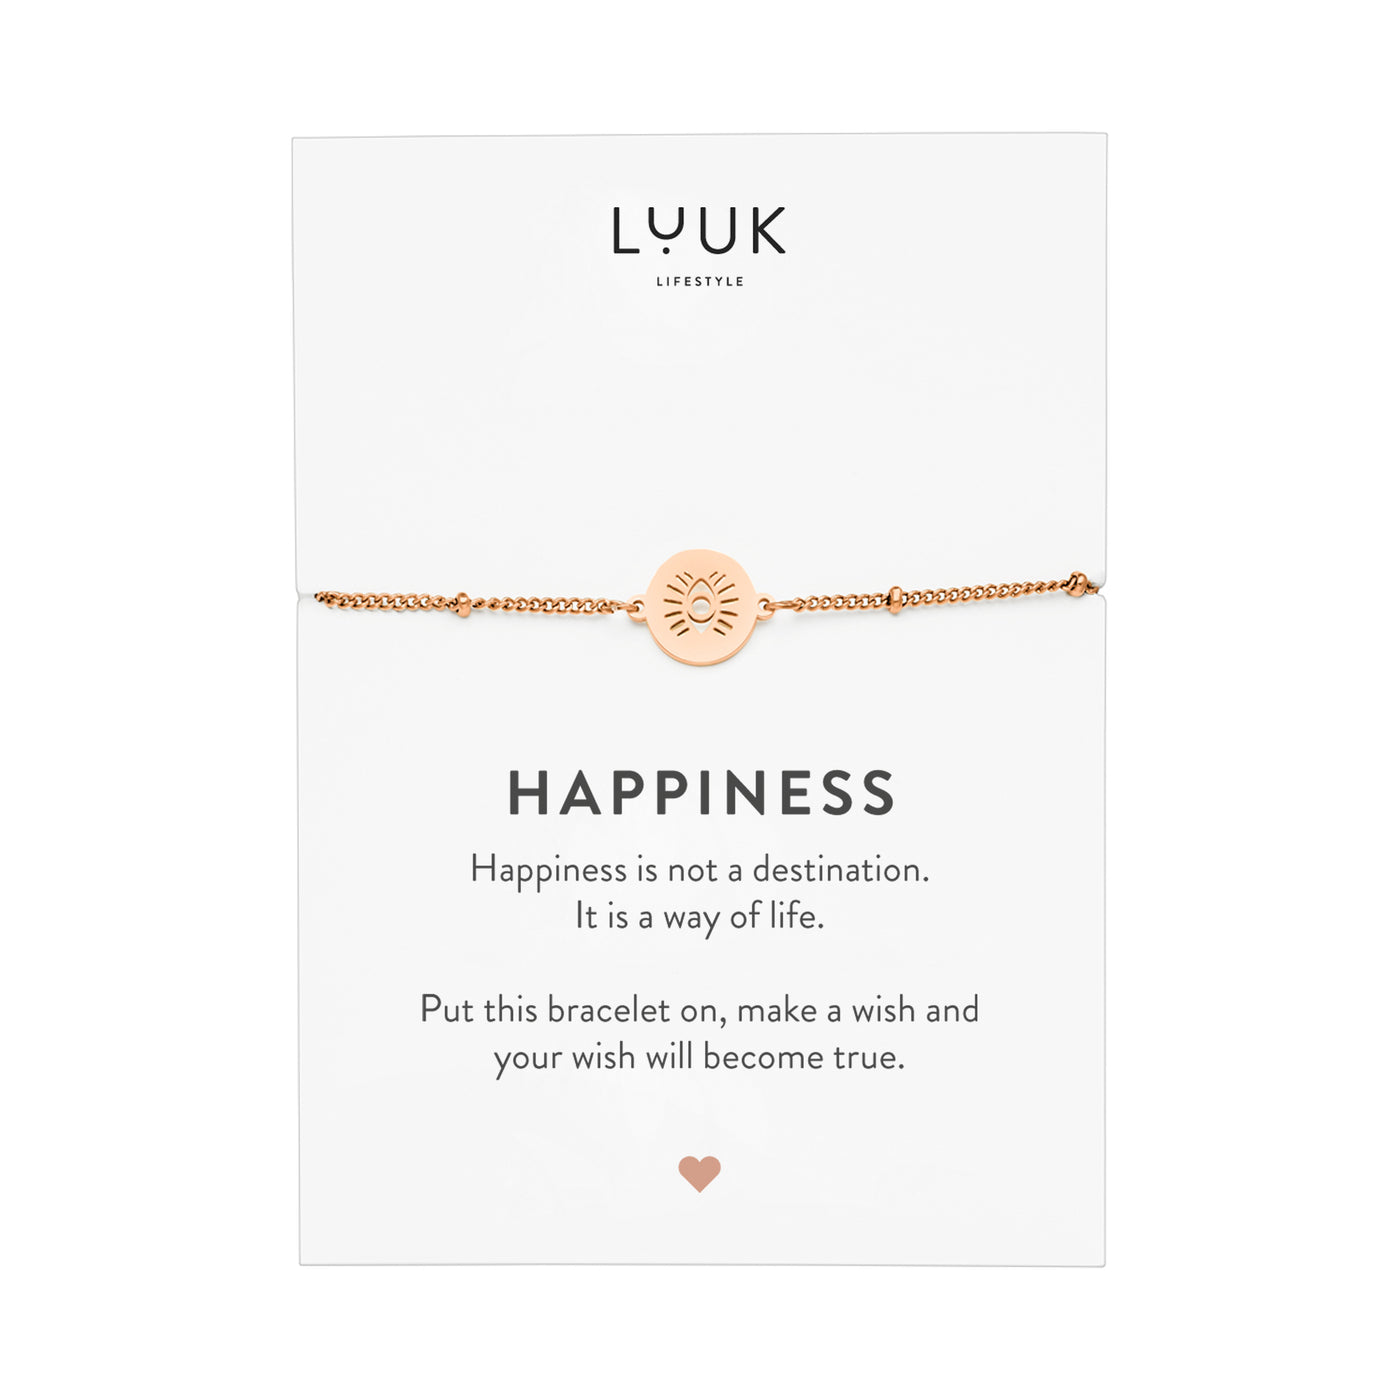 Rosegoldenes Armband mit Buddha Auge Anhänger auf Happiness Karte von der Brand Luuk Lifestyle 